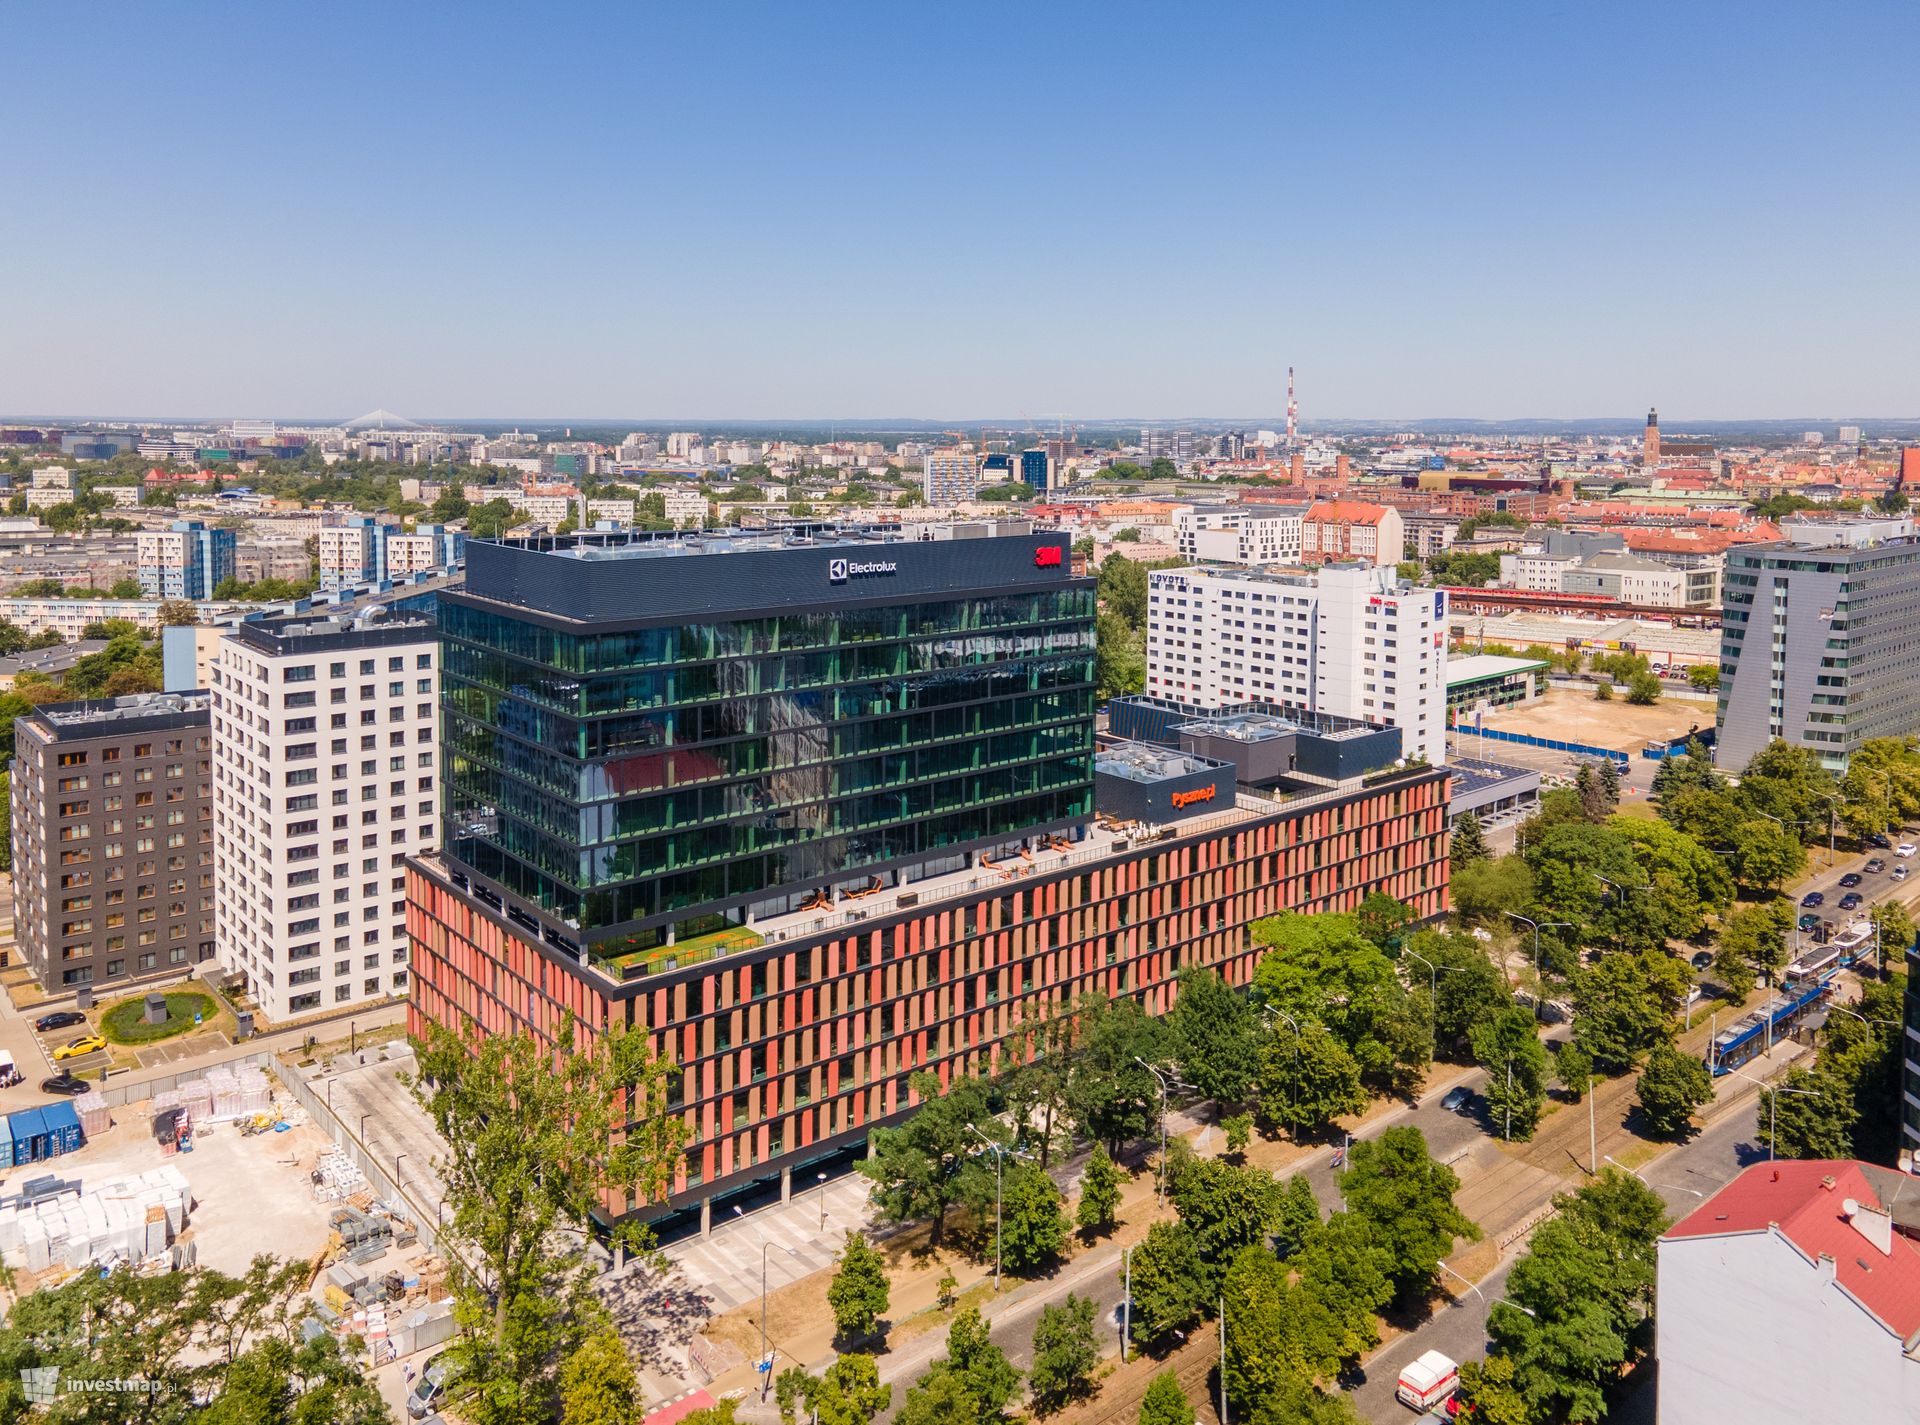 Czesi kupili za ponad 100 milionów euro biurowiec MidPoint 71 we Wrocławiu